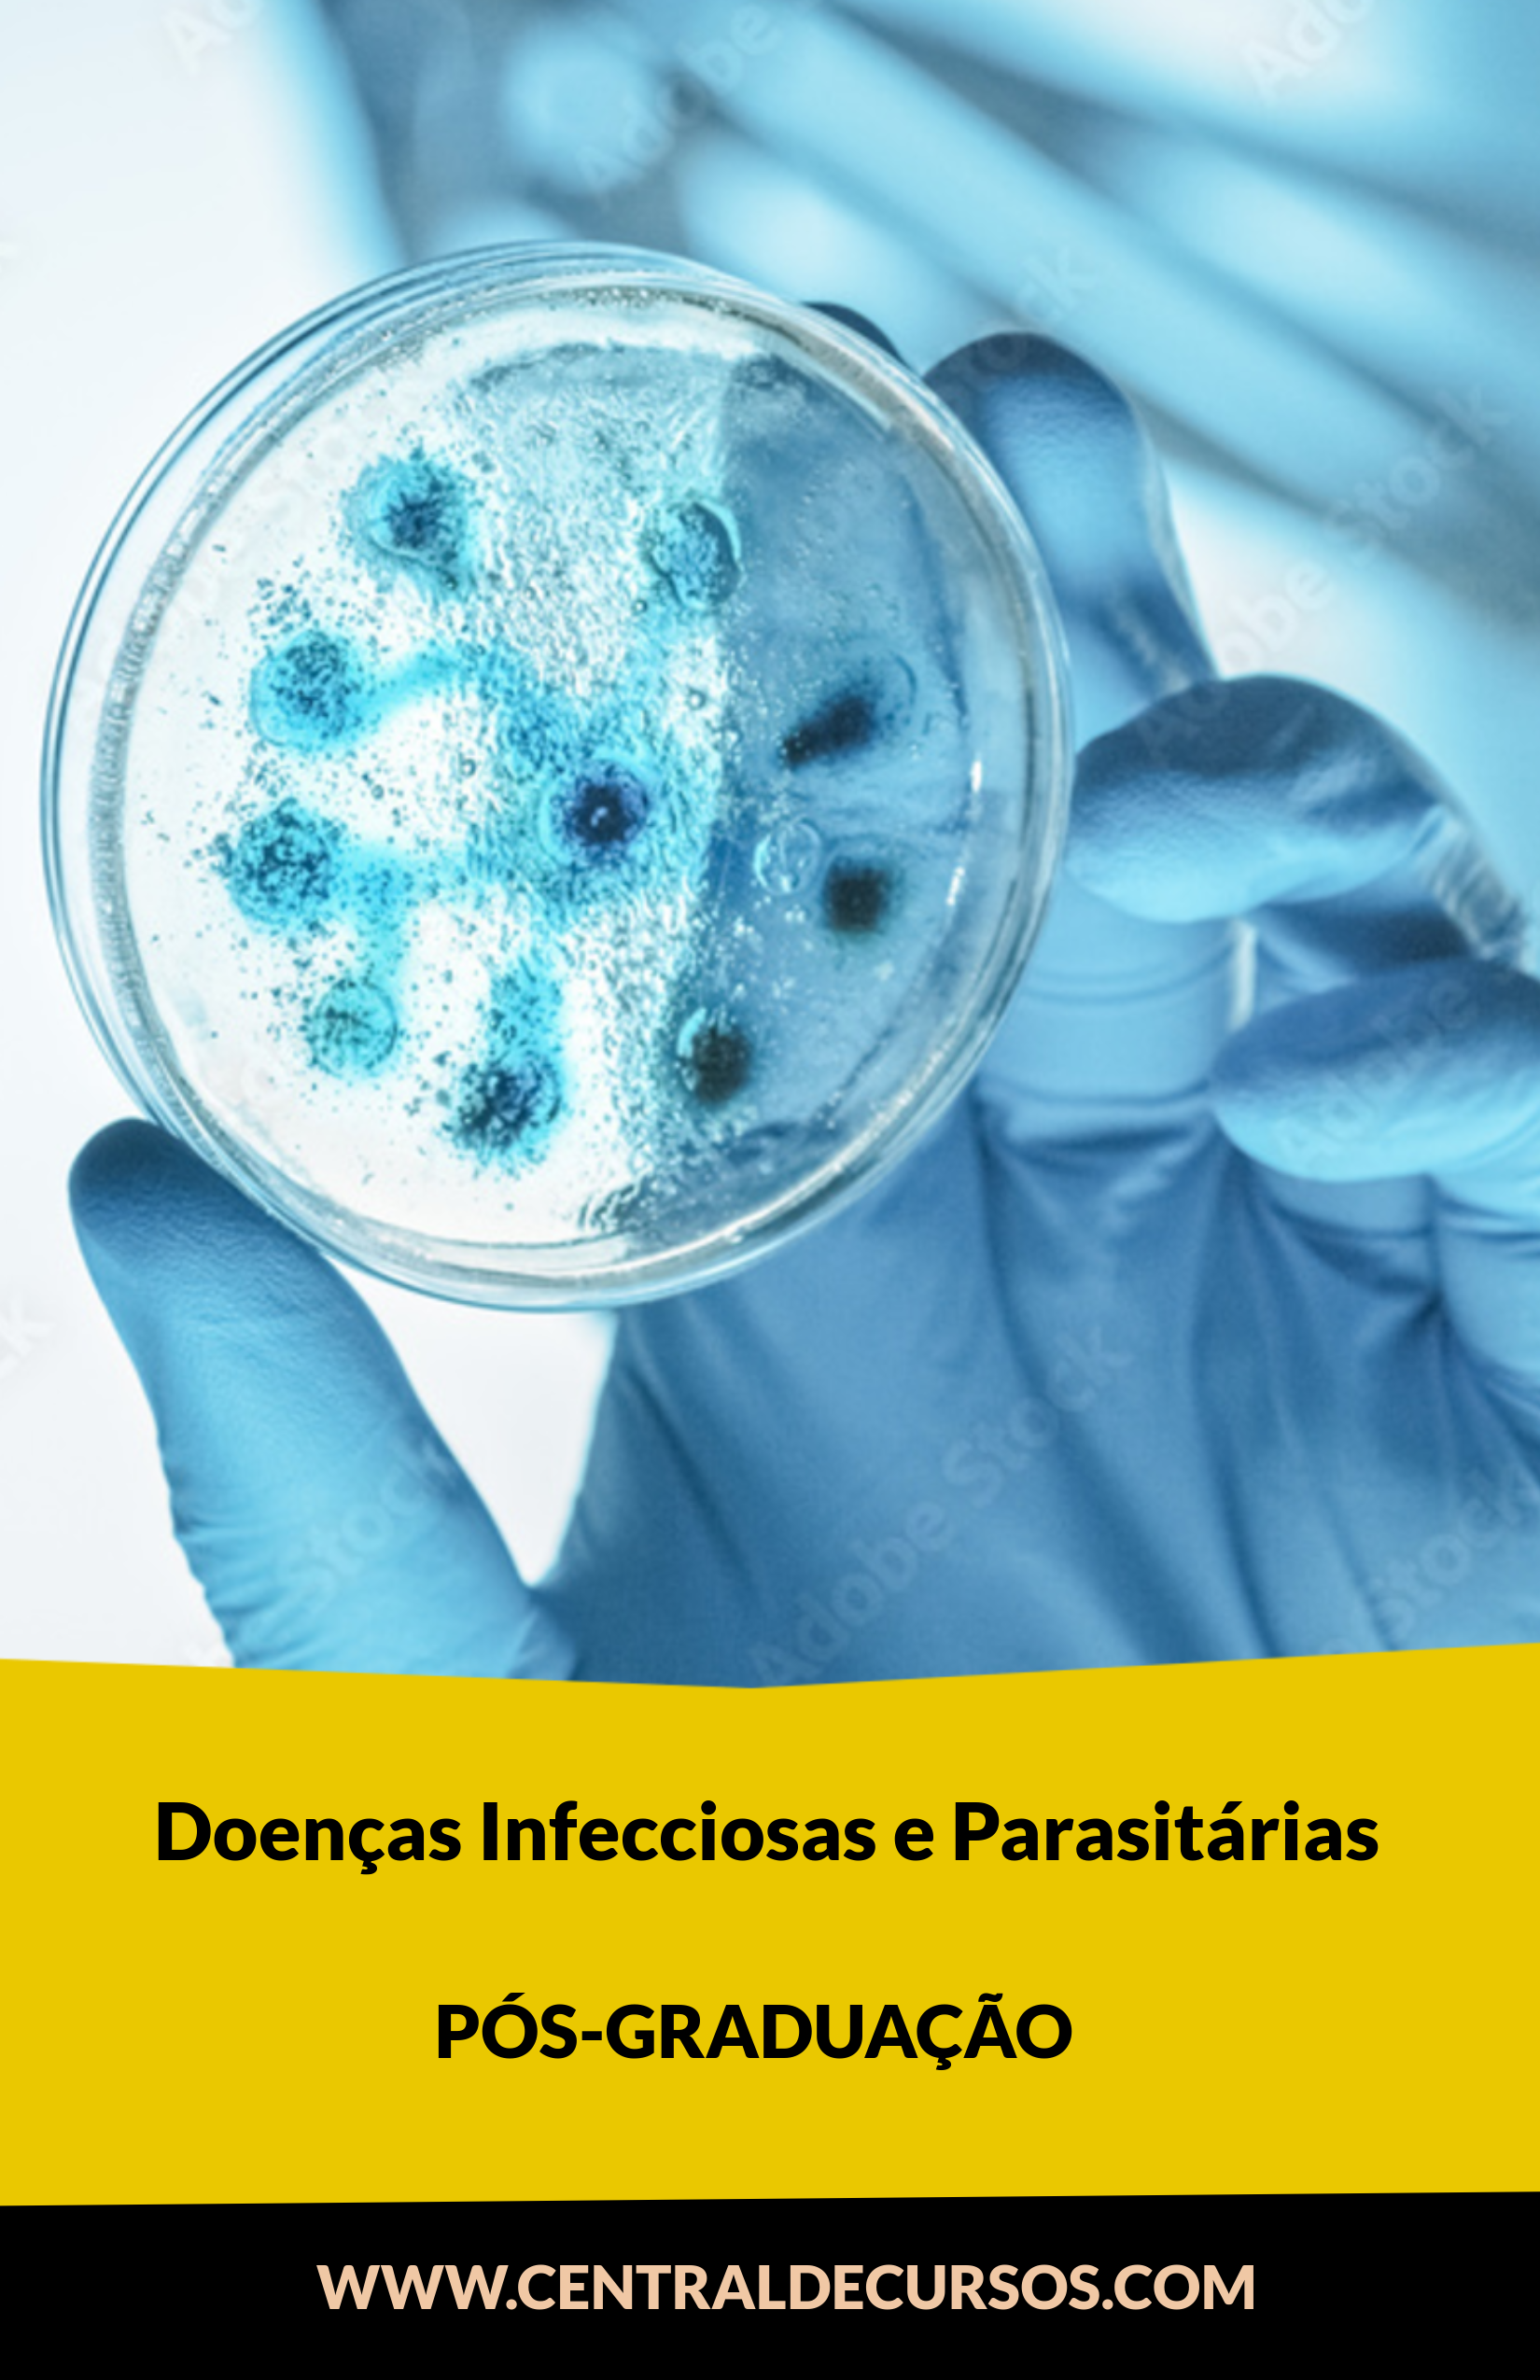  Doenças Infecciosas E Parasitárias